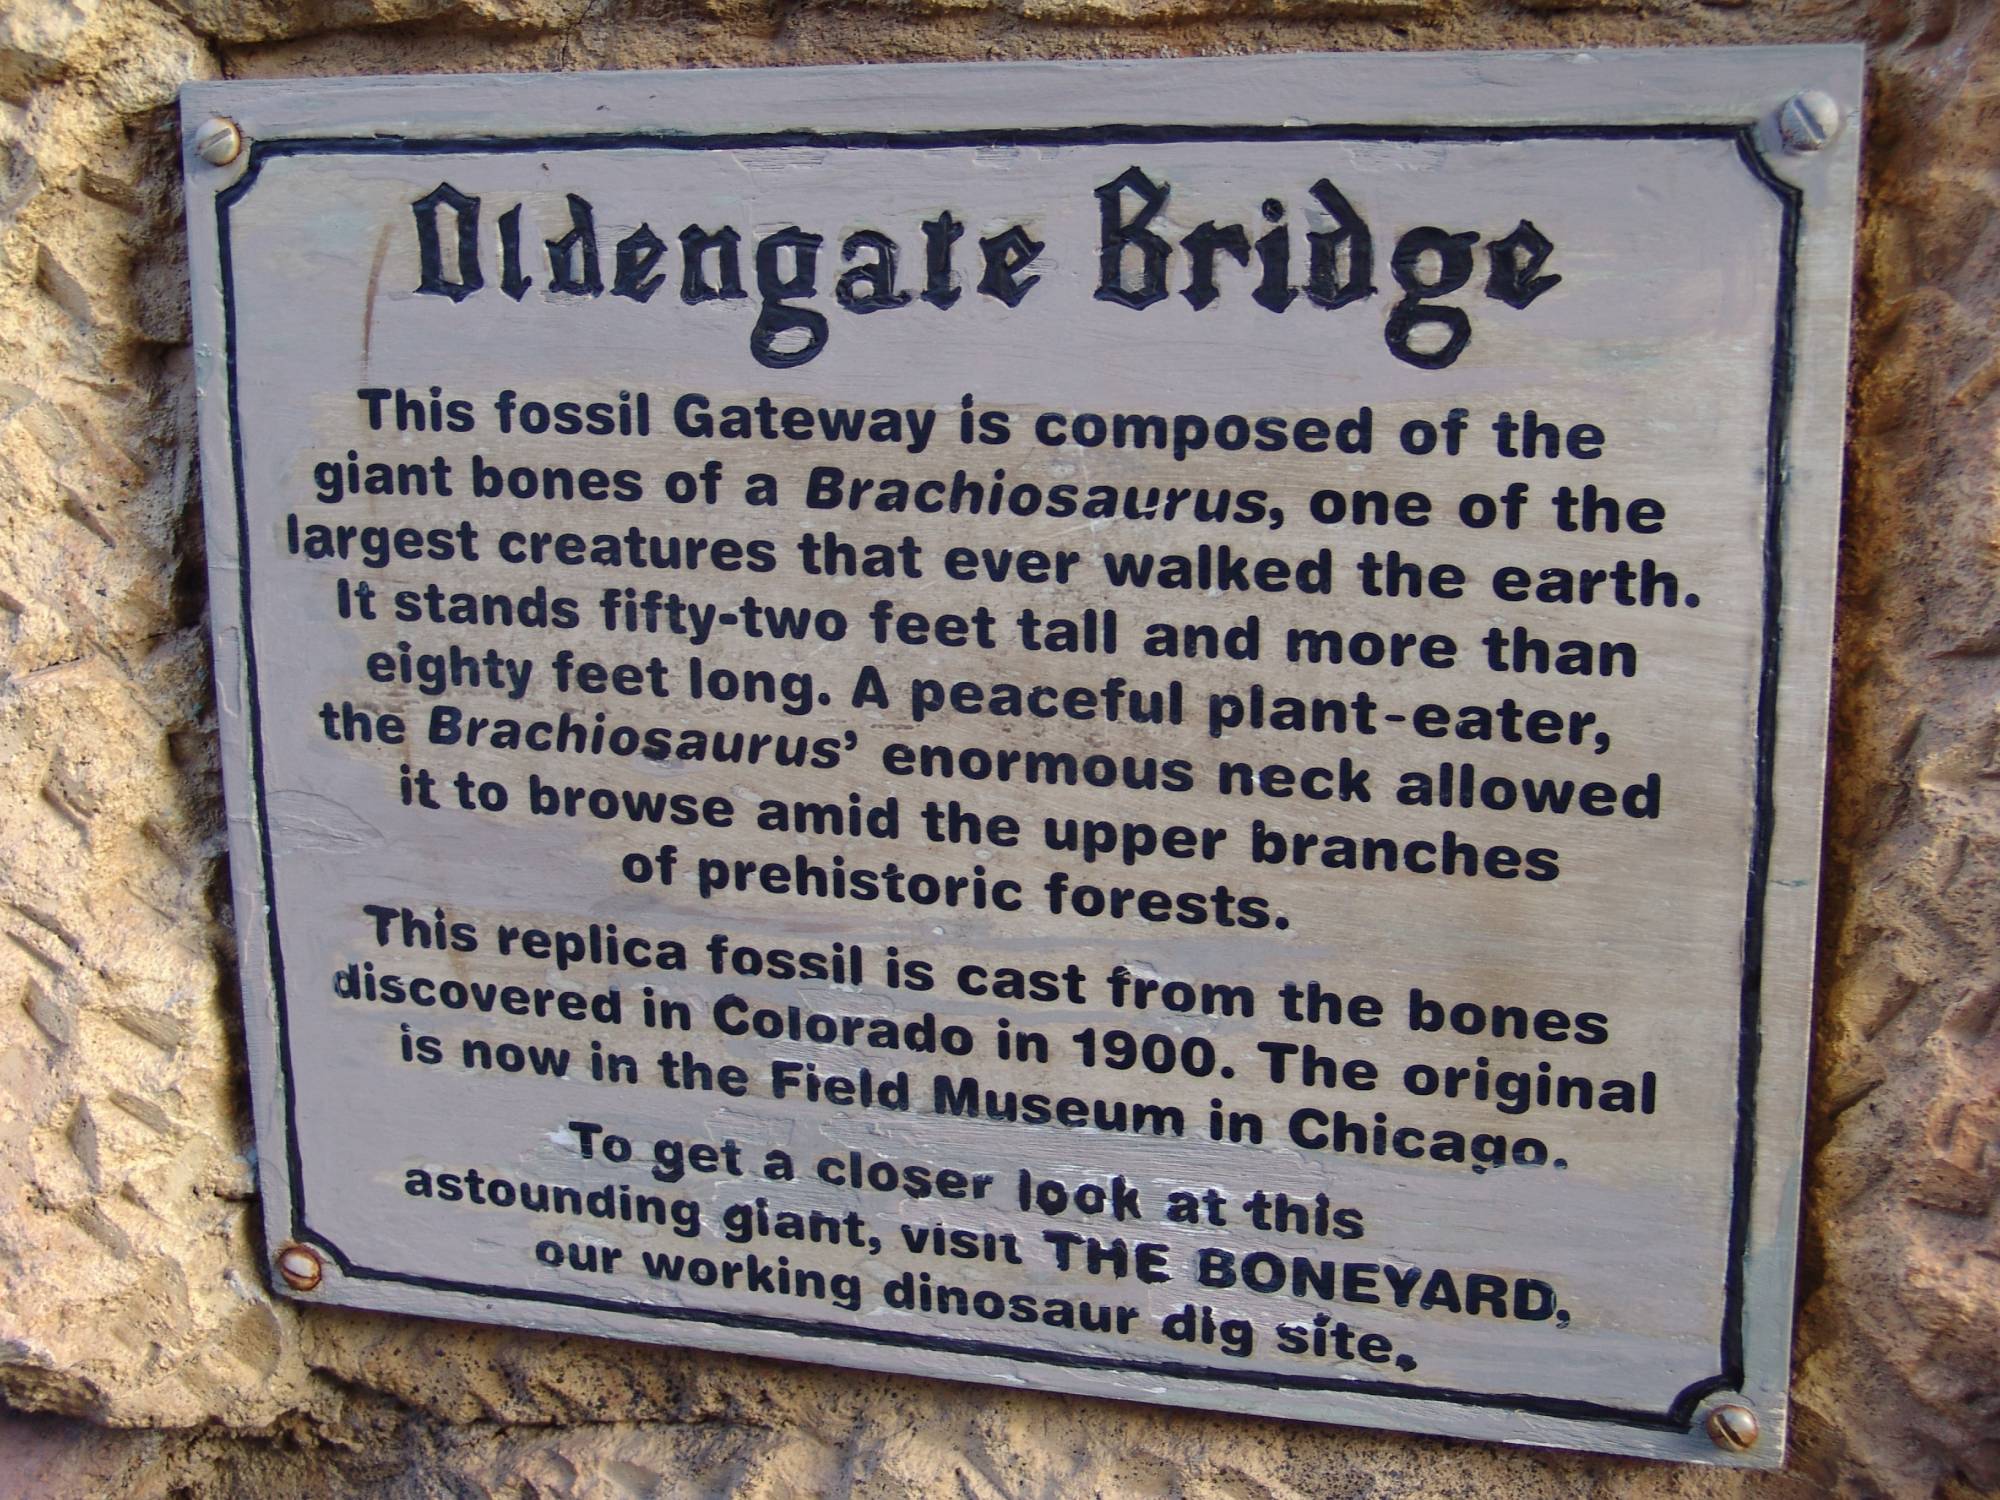 Animal Kingdom - Oldengate Bridge